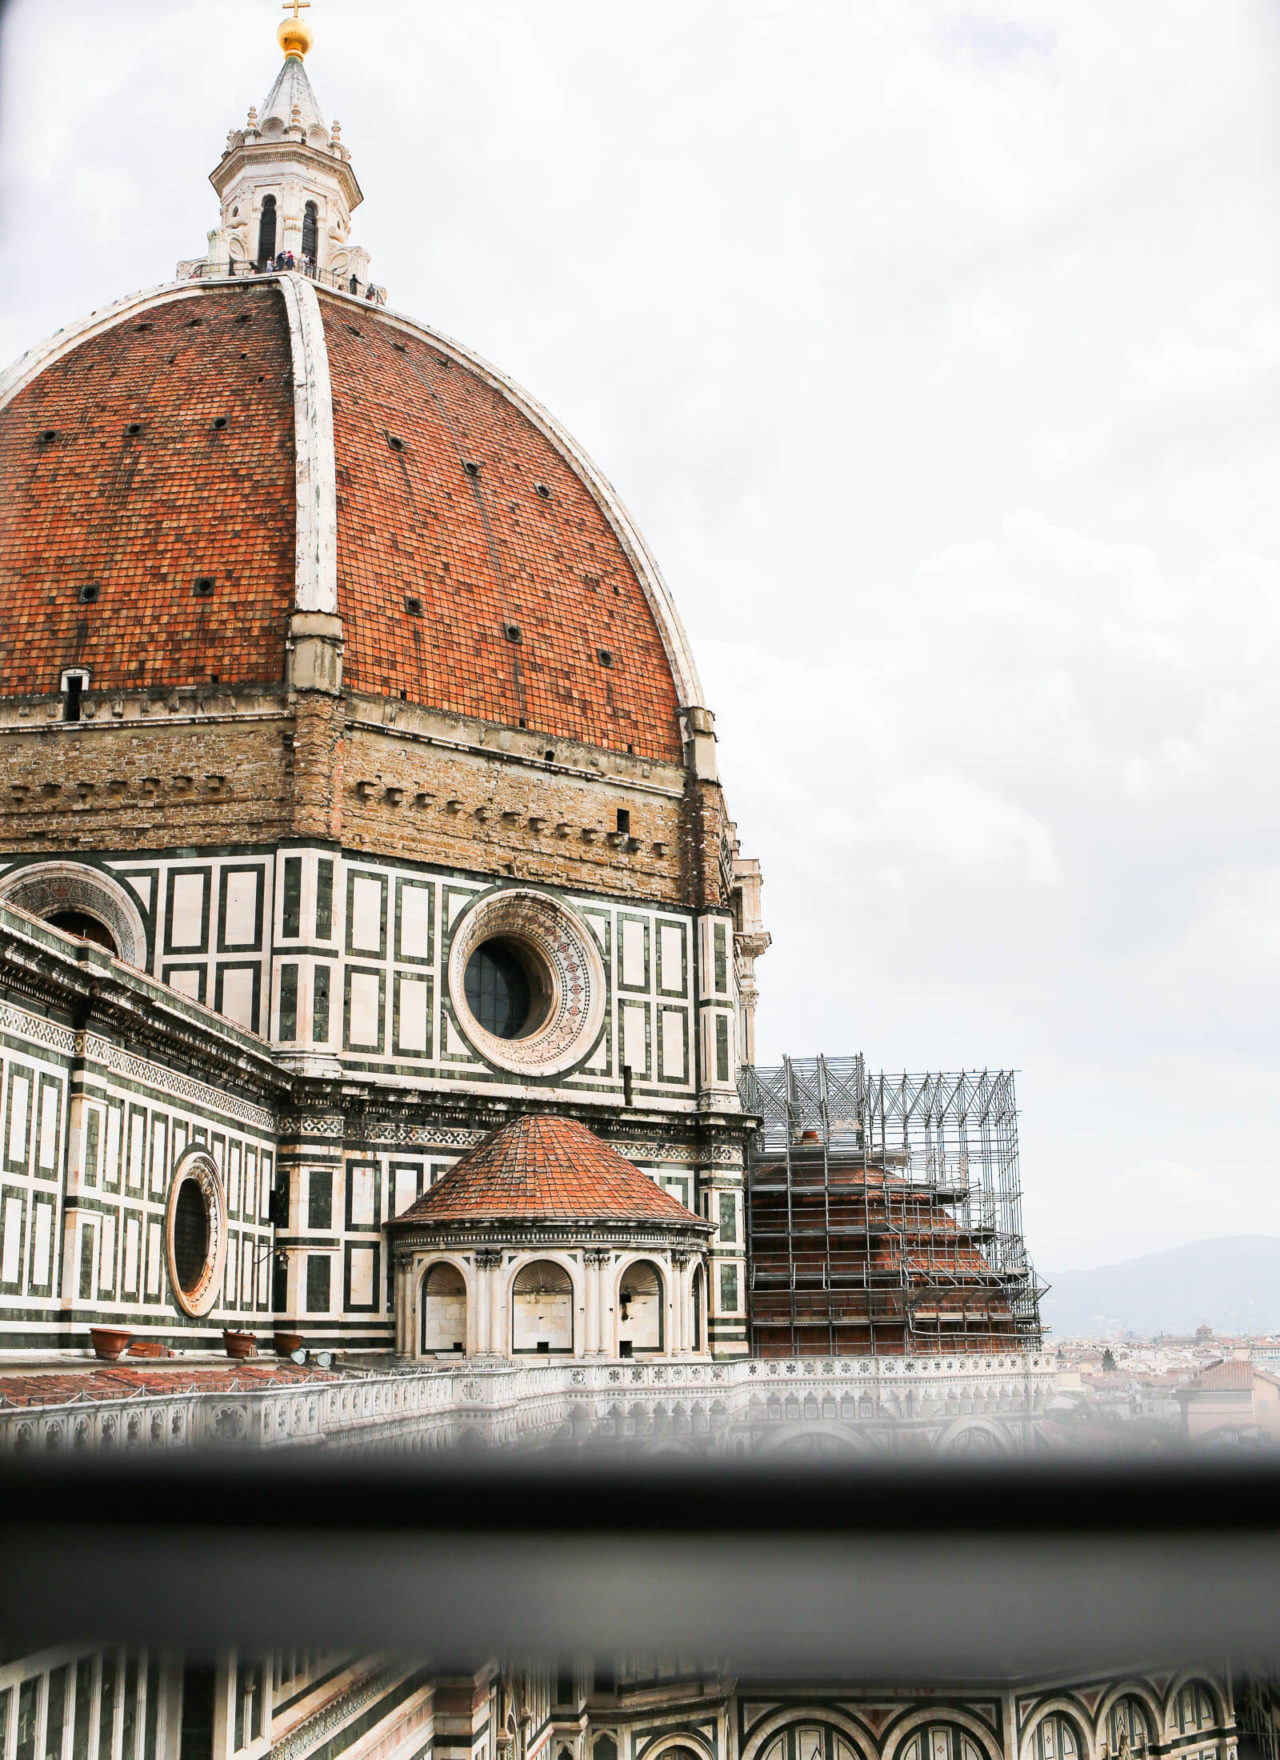 ITALIA: Tuscany + Florence